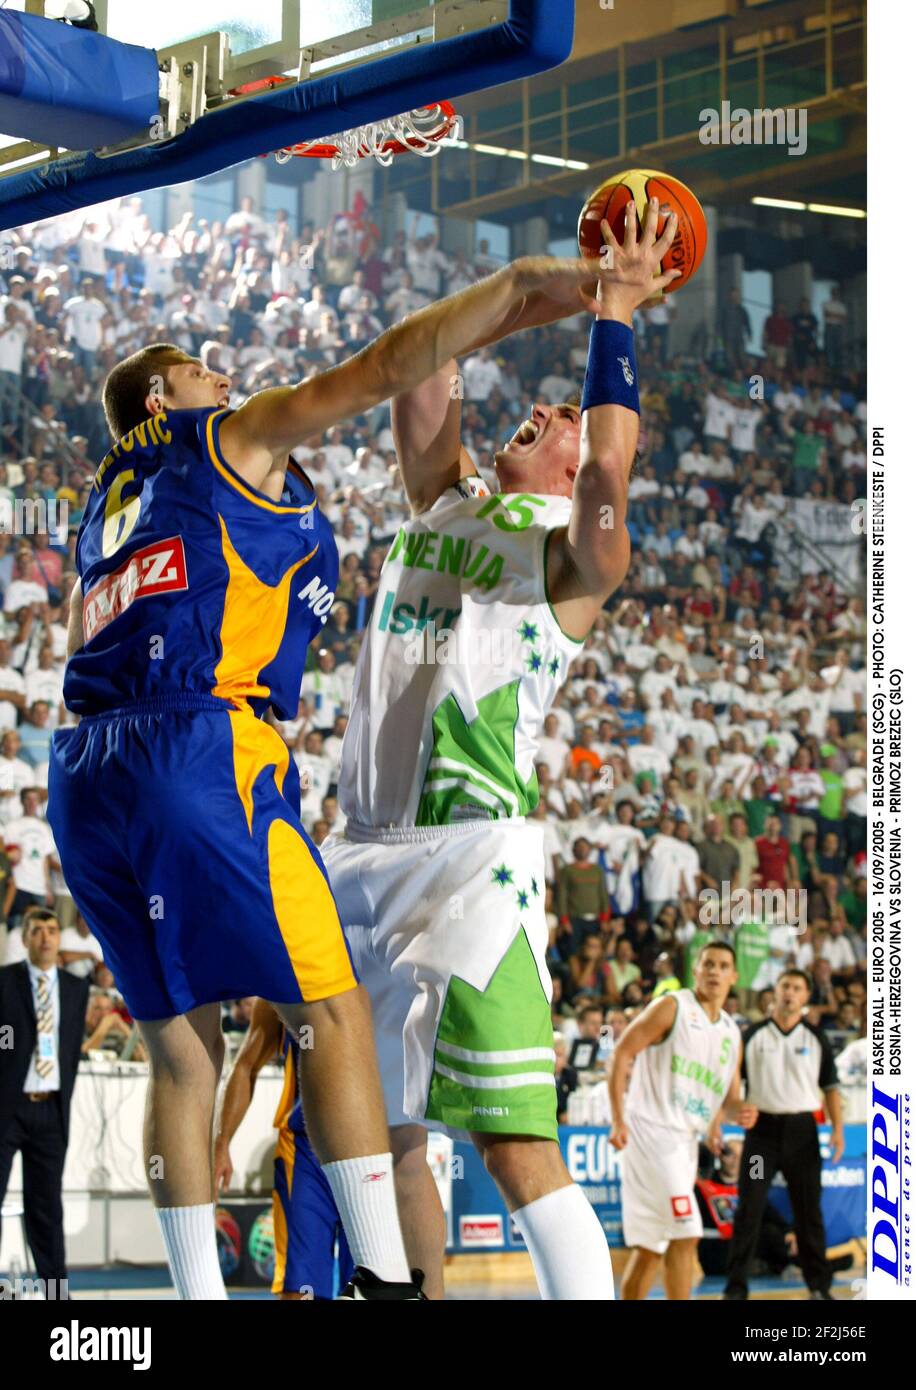 BASKETBALL - EURO 2005 - 16/09/2005 - BELGRADE (SCG) - PHOTO: CATHERINE STEENKESTE / DPPI BOSNIA-HERZEGOVINA VS SLOVENIA - PRIMOZ BREZEC (SLO) Stock Photo